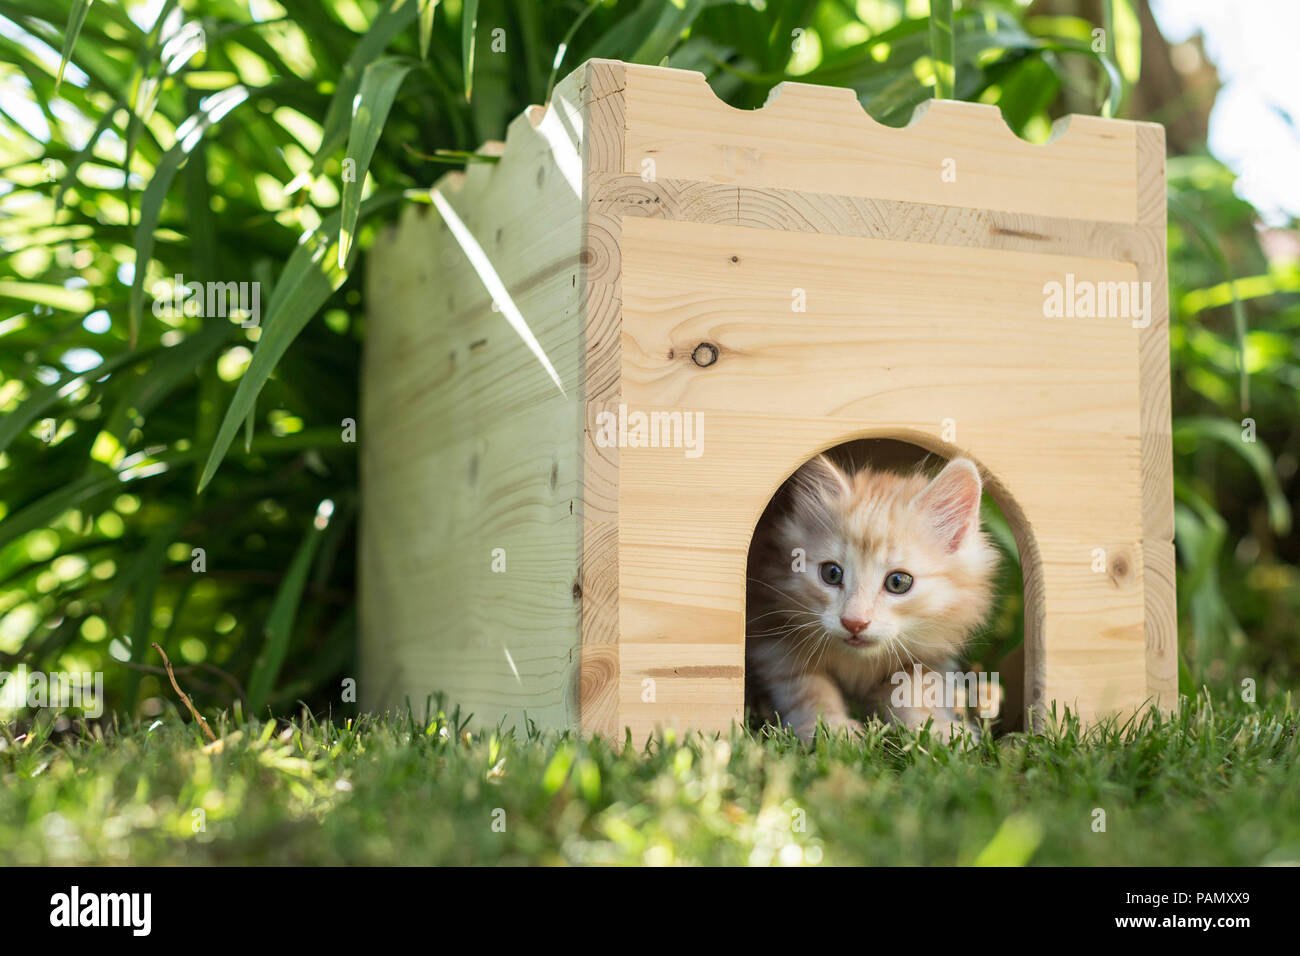 Norwegian Forest Cat. Tabby kitten in a wooden hide in a garden. Germany Stock Photo